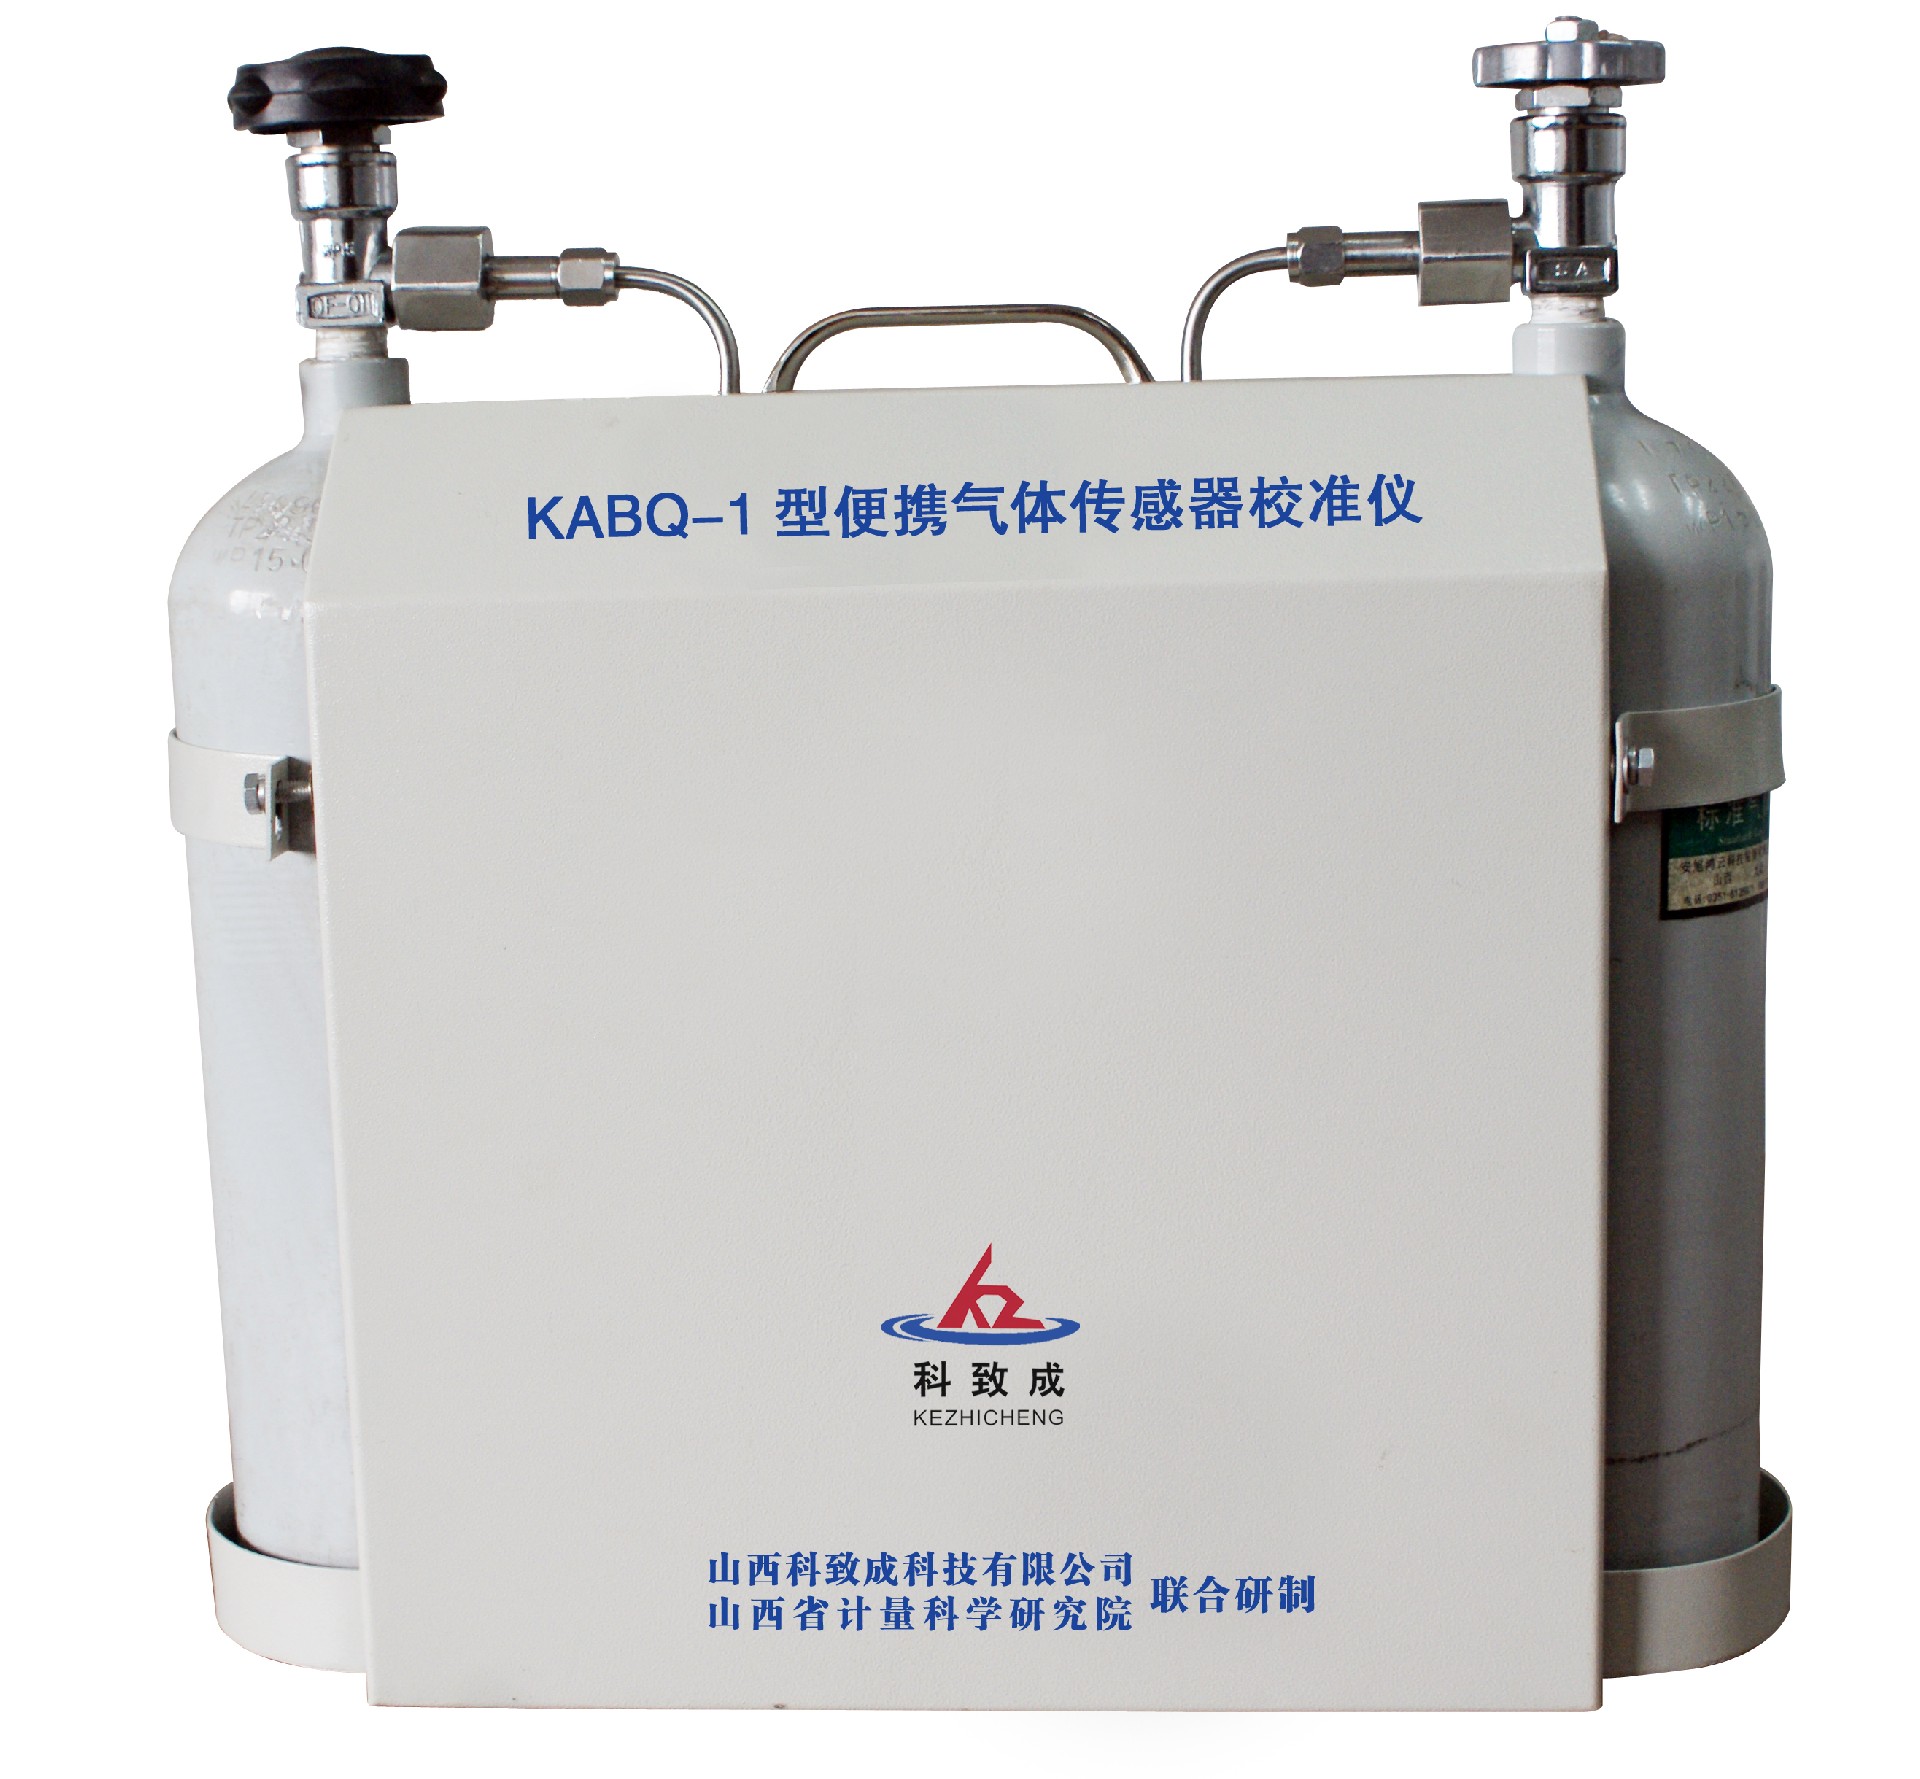 KABQ-1型便携气体传感器校准仪